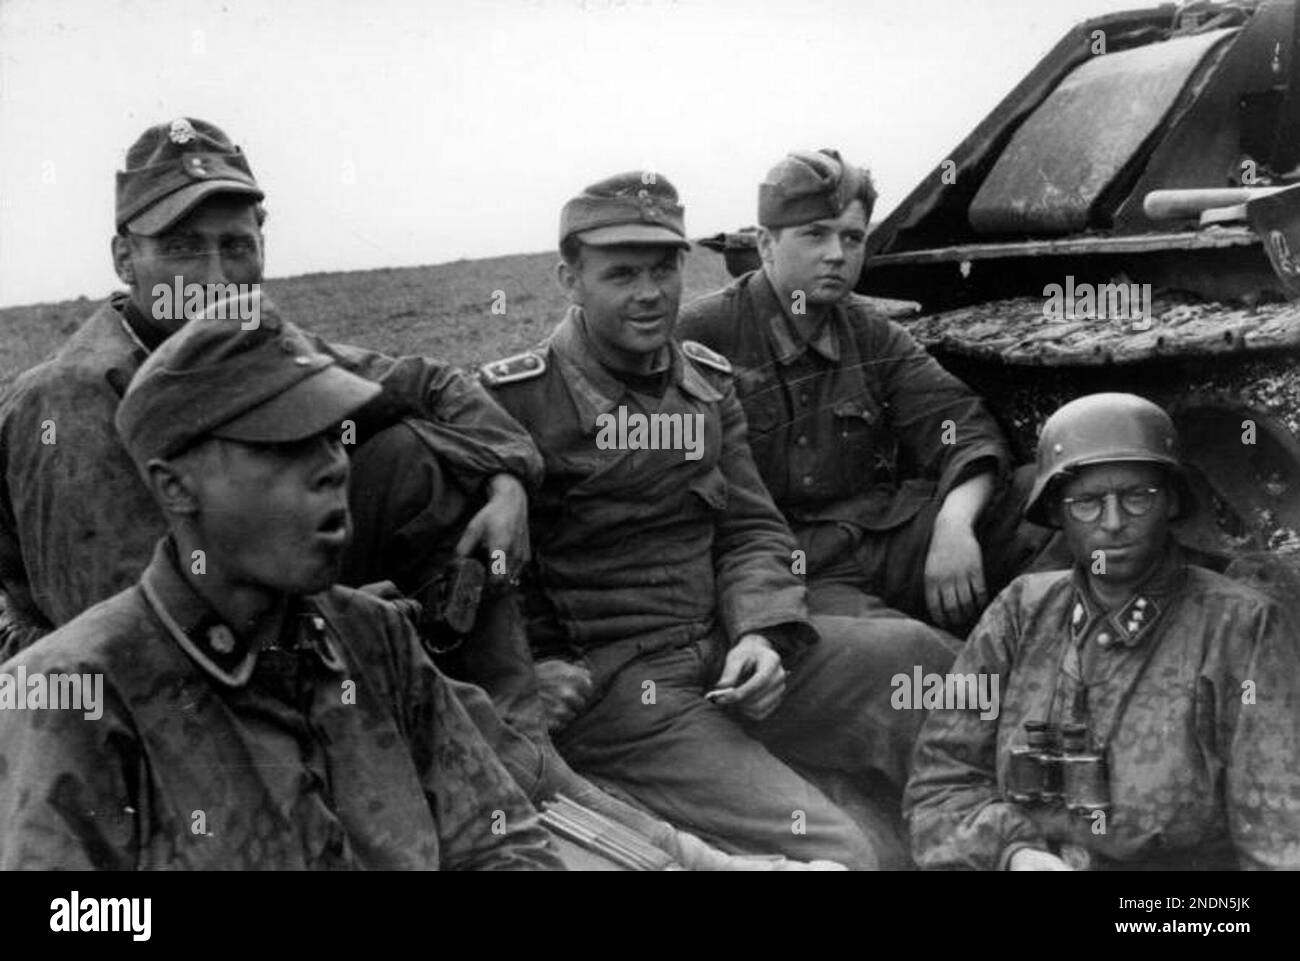 Soldati della 3rd SS Panzer divisione 'Totenkopf' a riposo accanto a un carro armato sovietico distrutto T-34 in Romania nel 1944. Foto Bundesarchiv Bild 101i-024-3535-30, Ostfront, Waffen-SS-Angehörige bei Rast.jpg Foto Stock